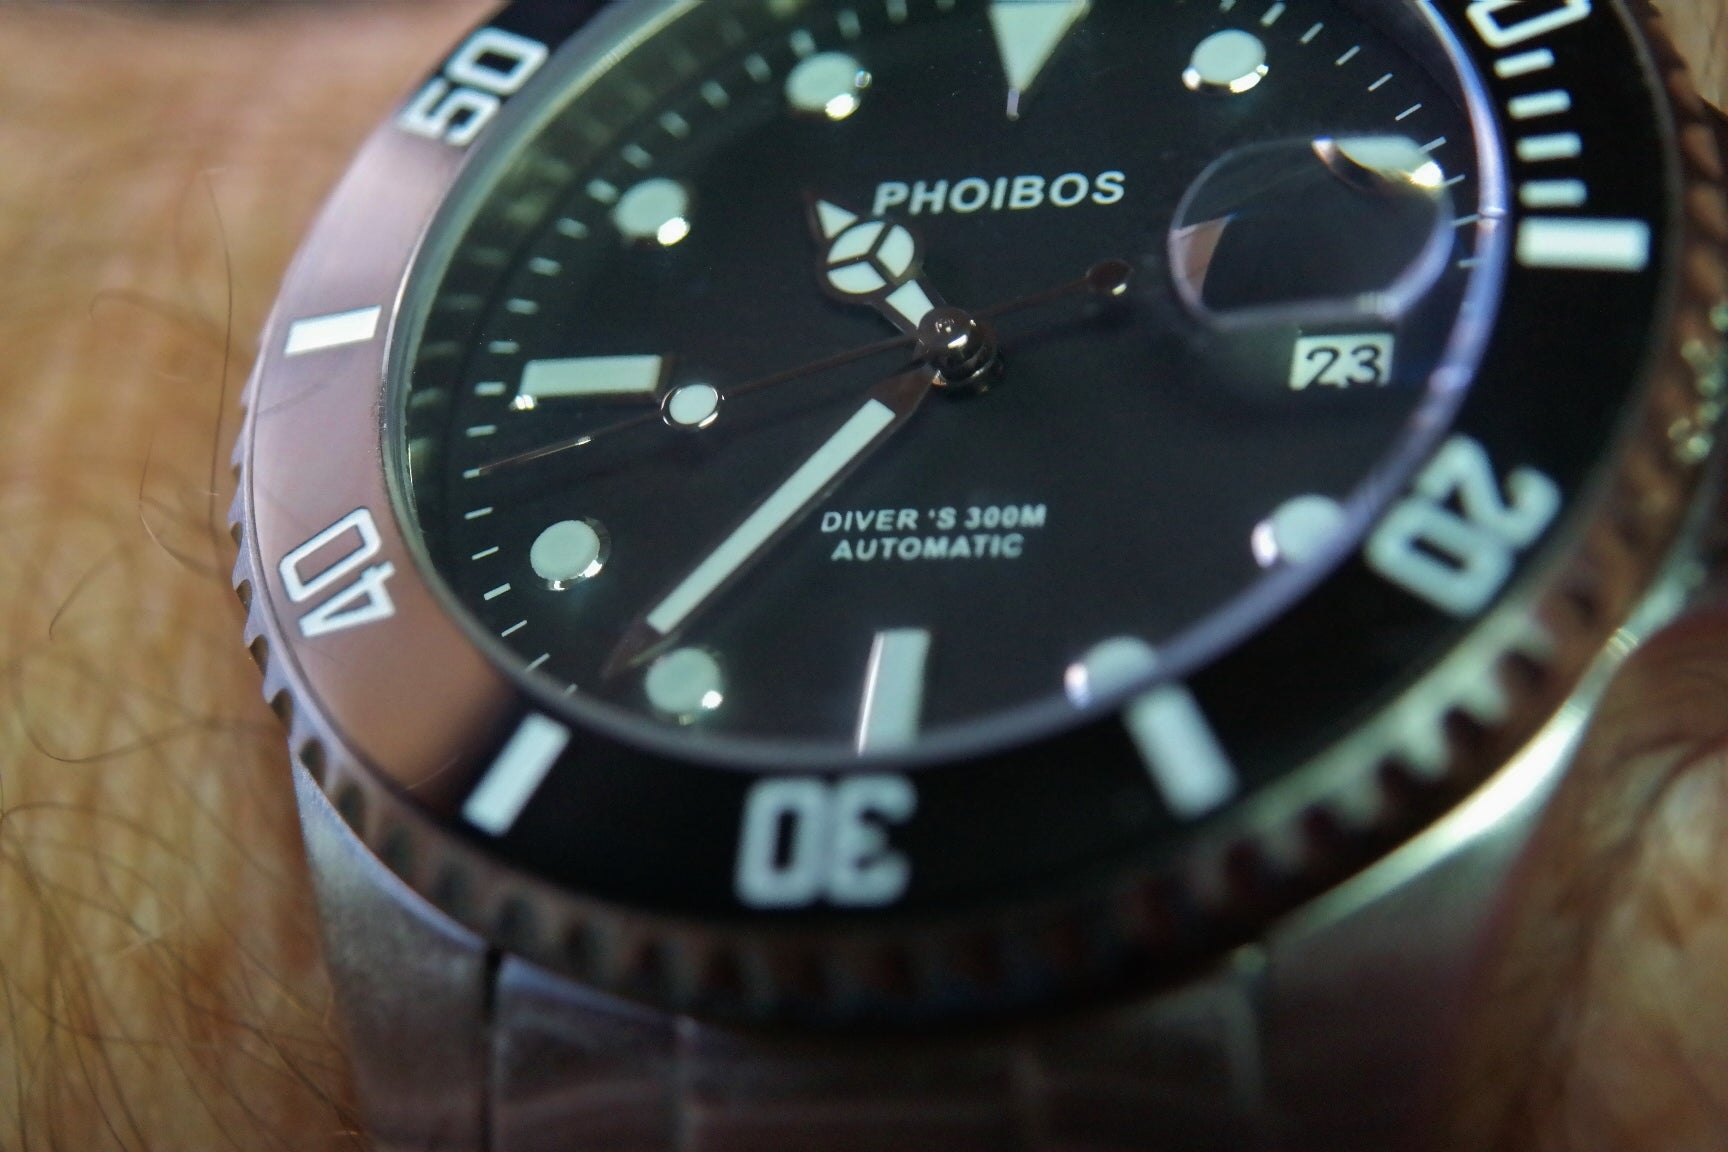 phoibos py007c 300m automatic diver watch black